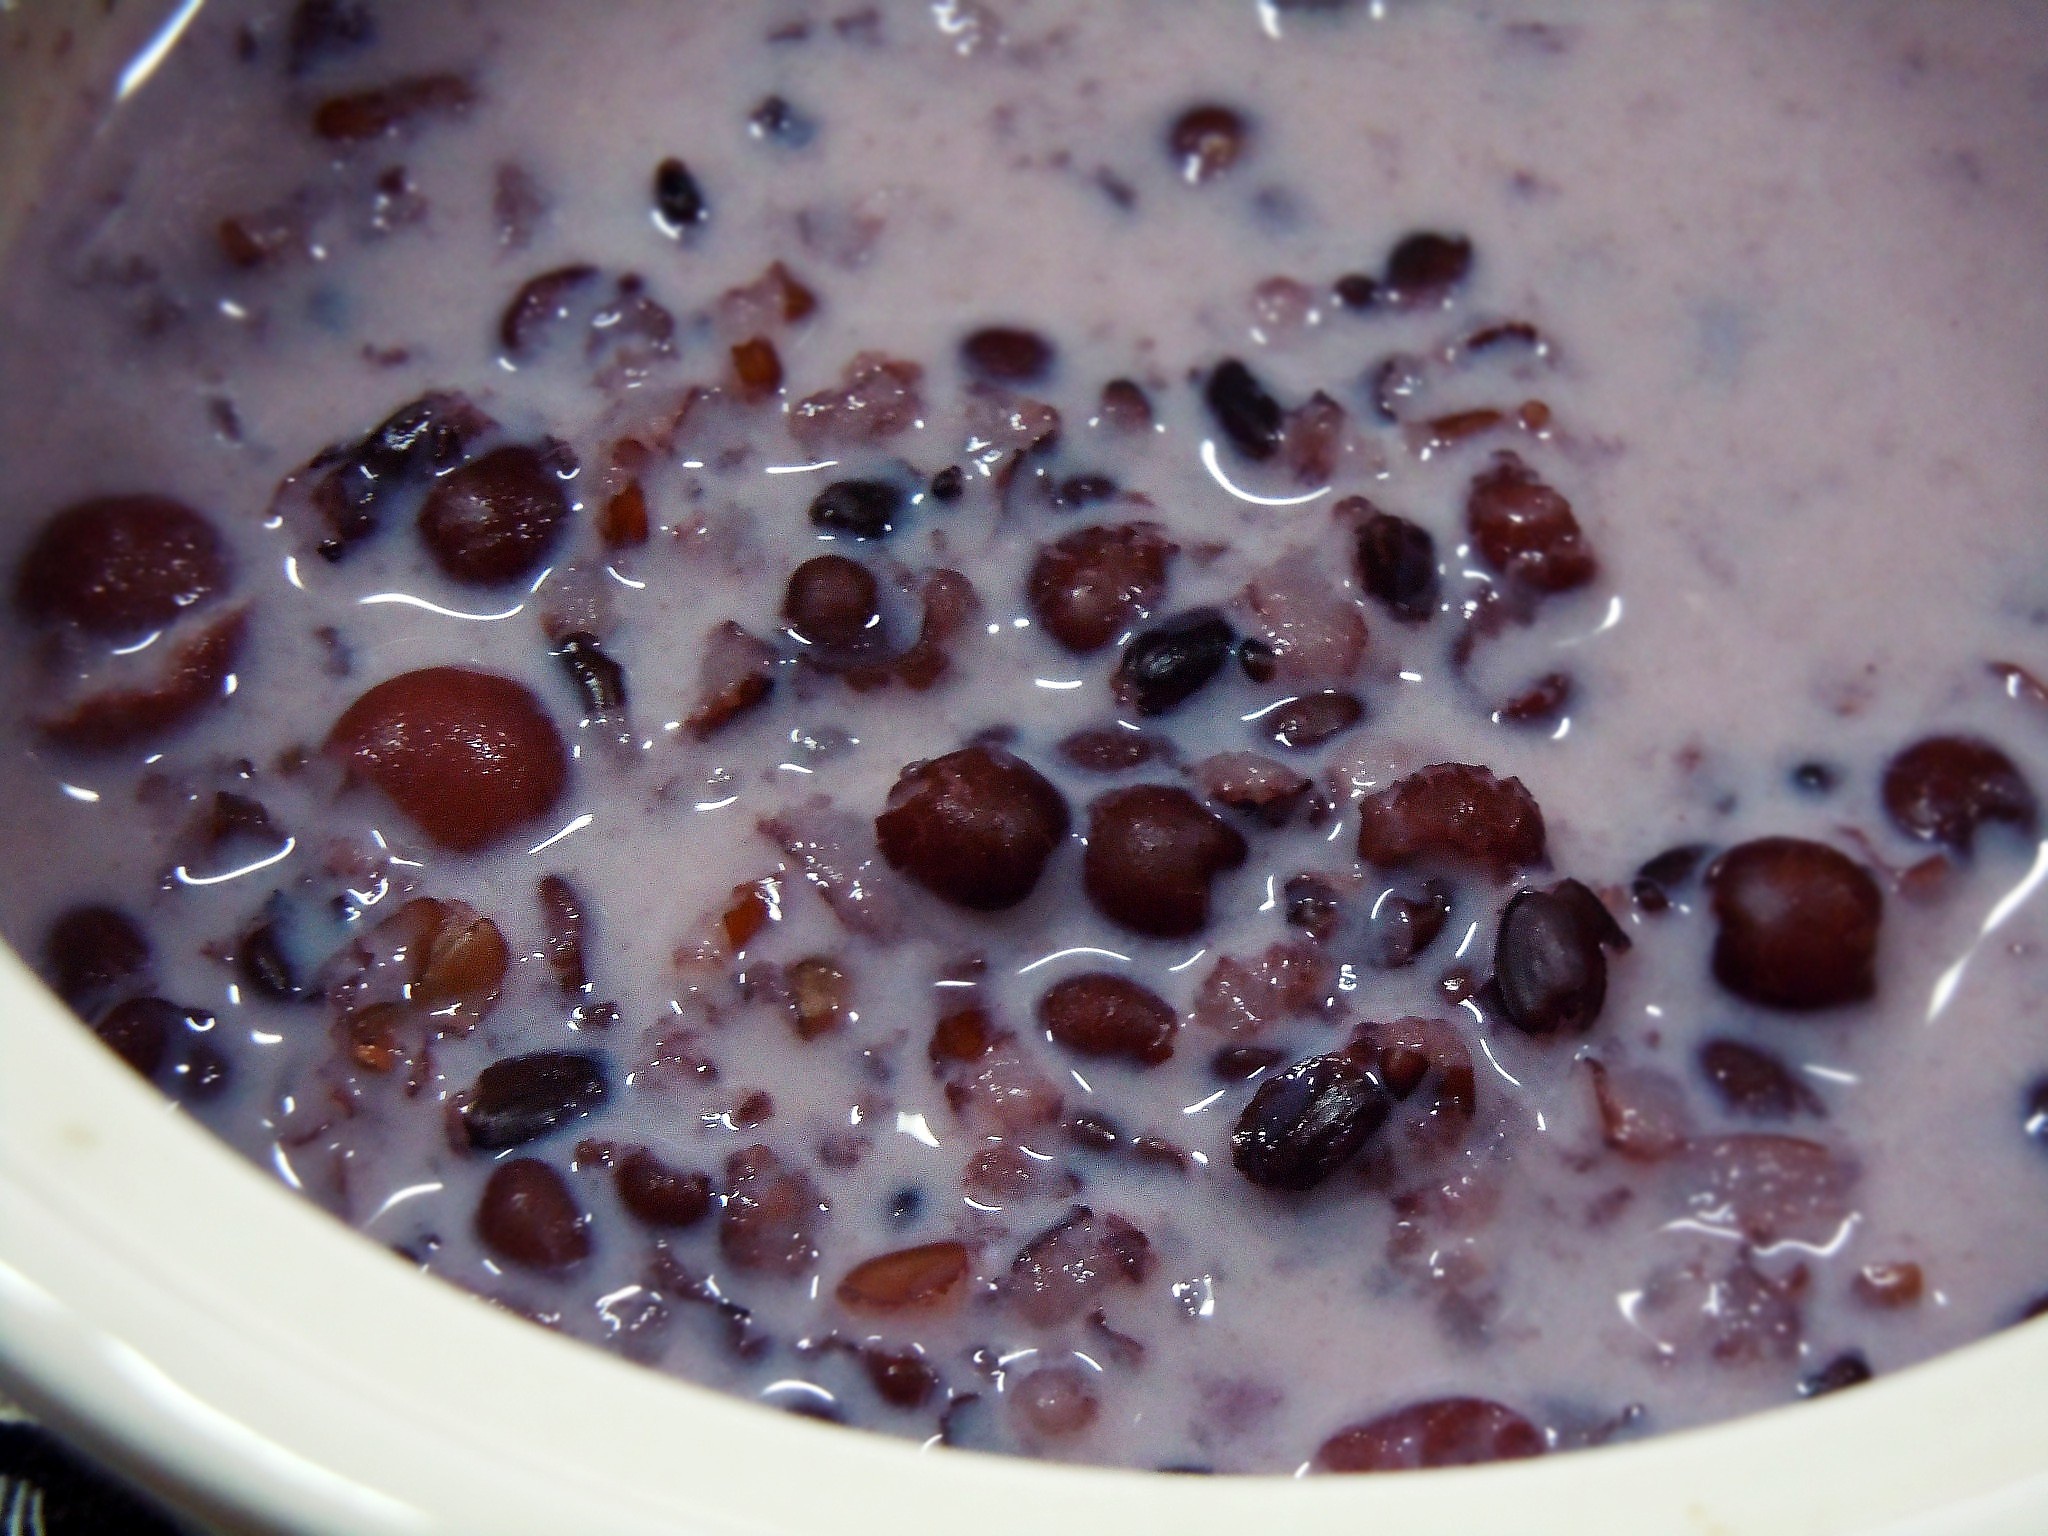 紫米红豆粥